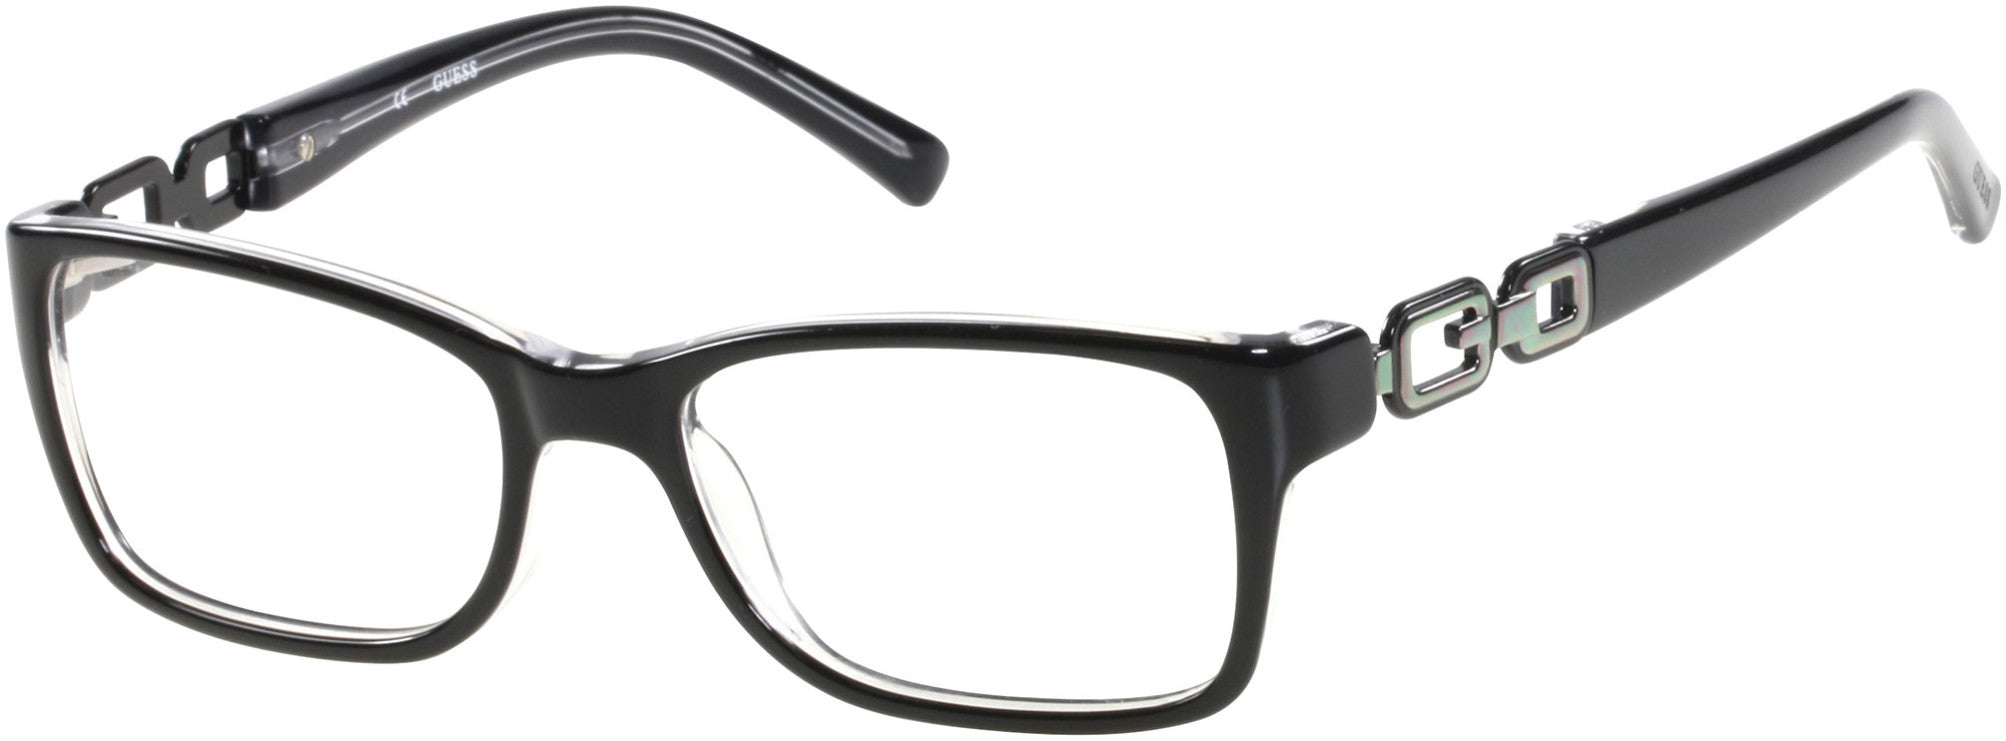 Guess GU2406 Eyeglasses B84-B84 - Black